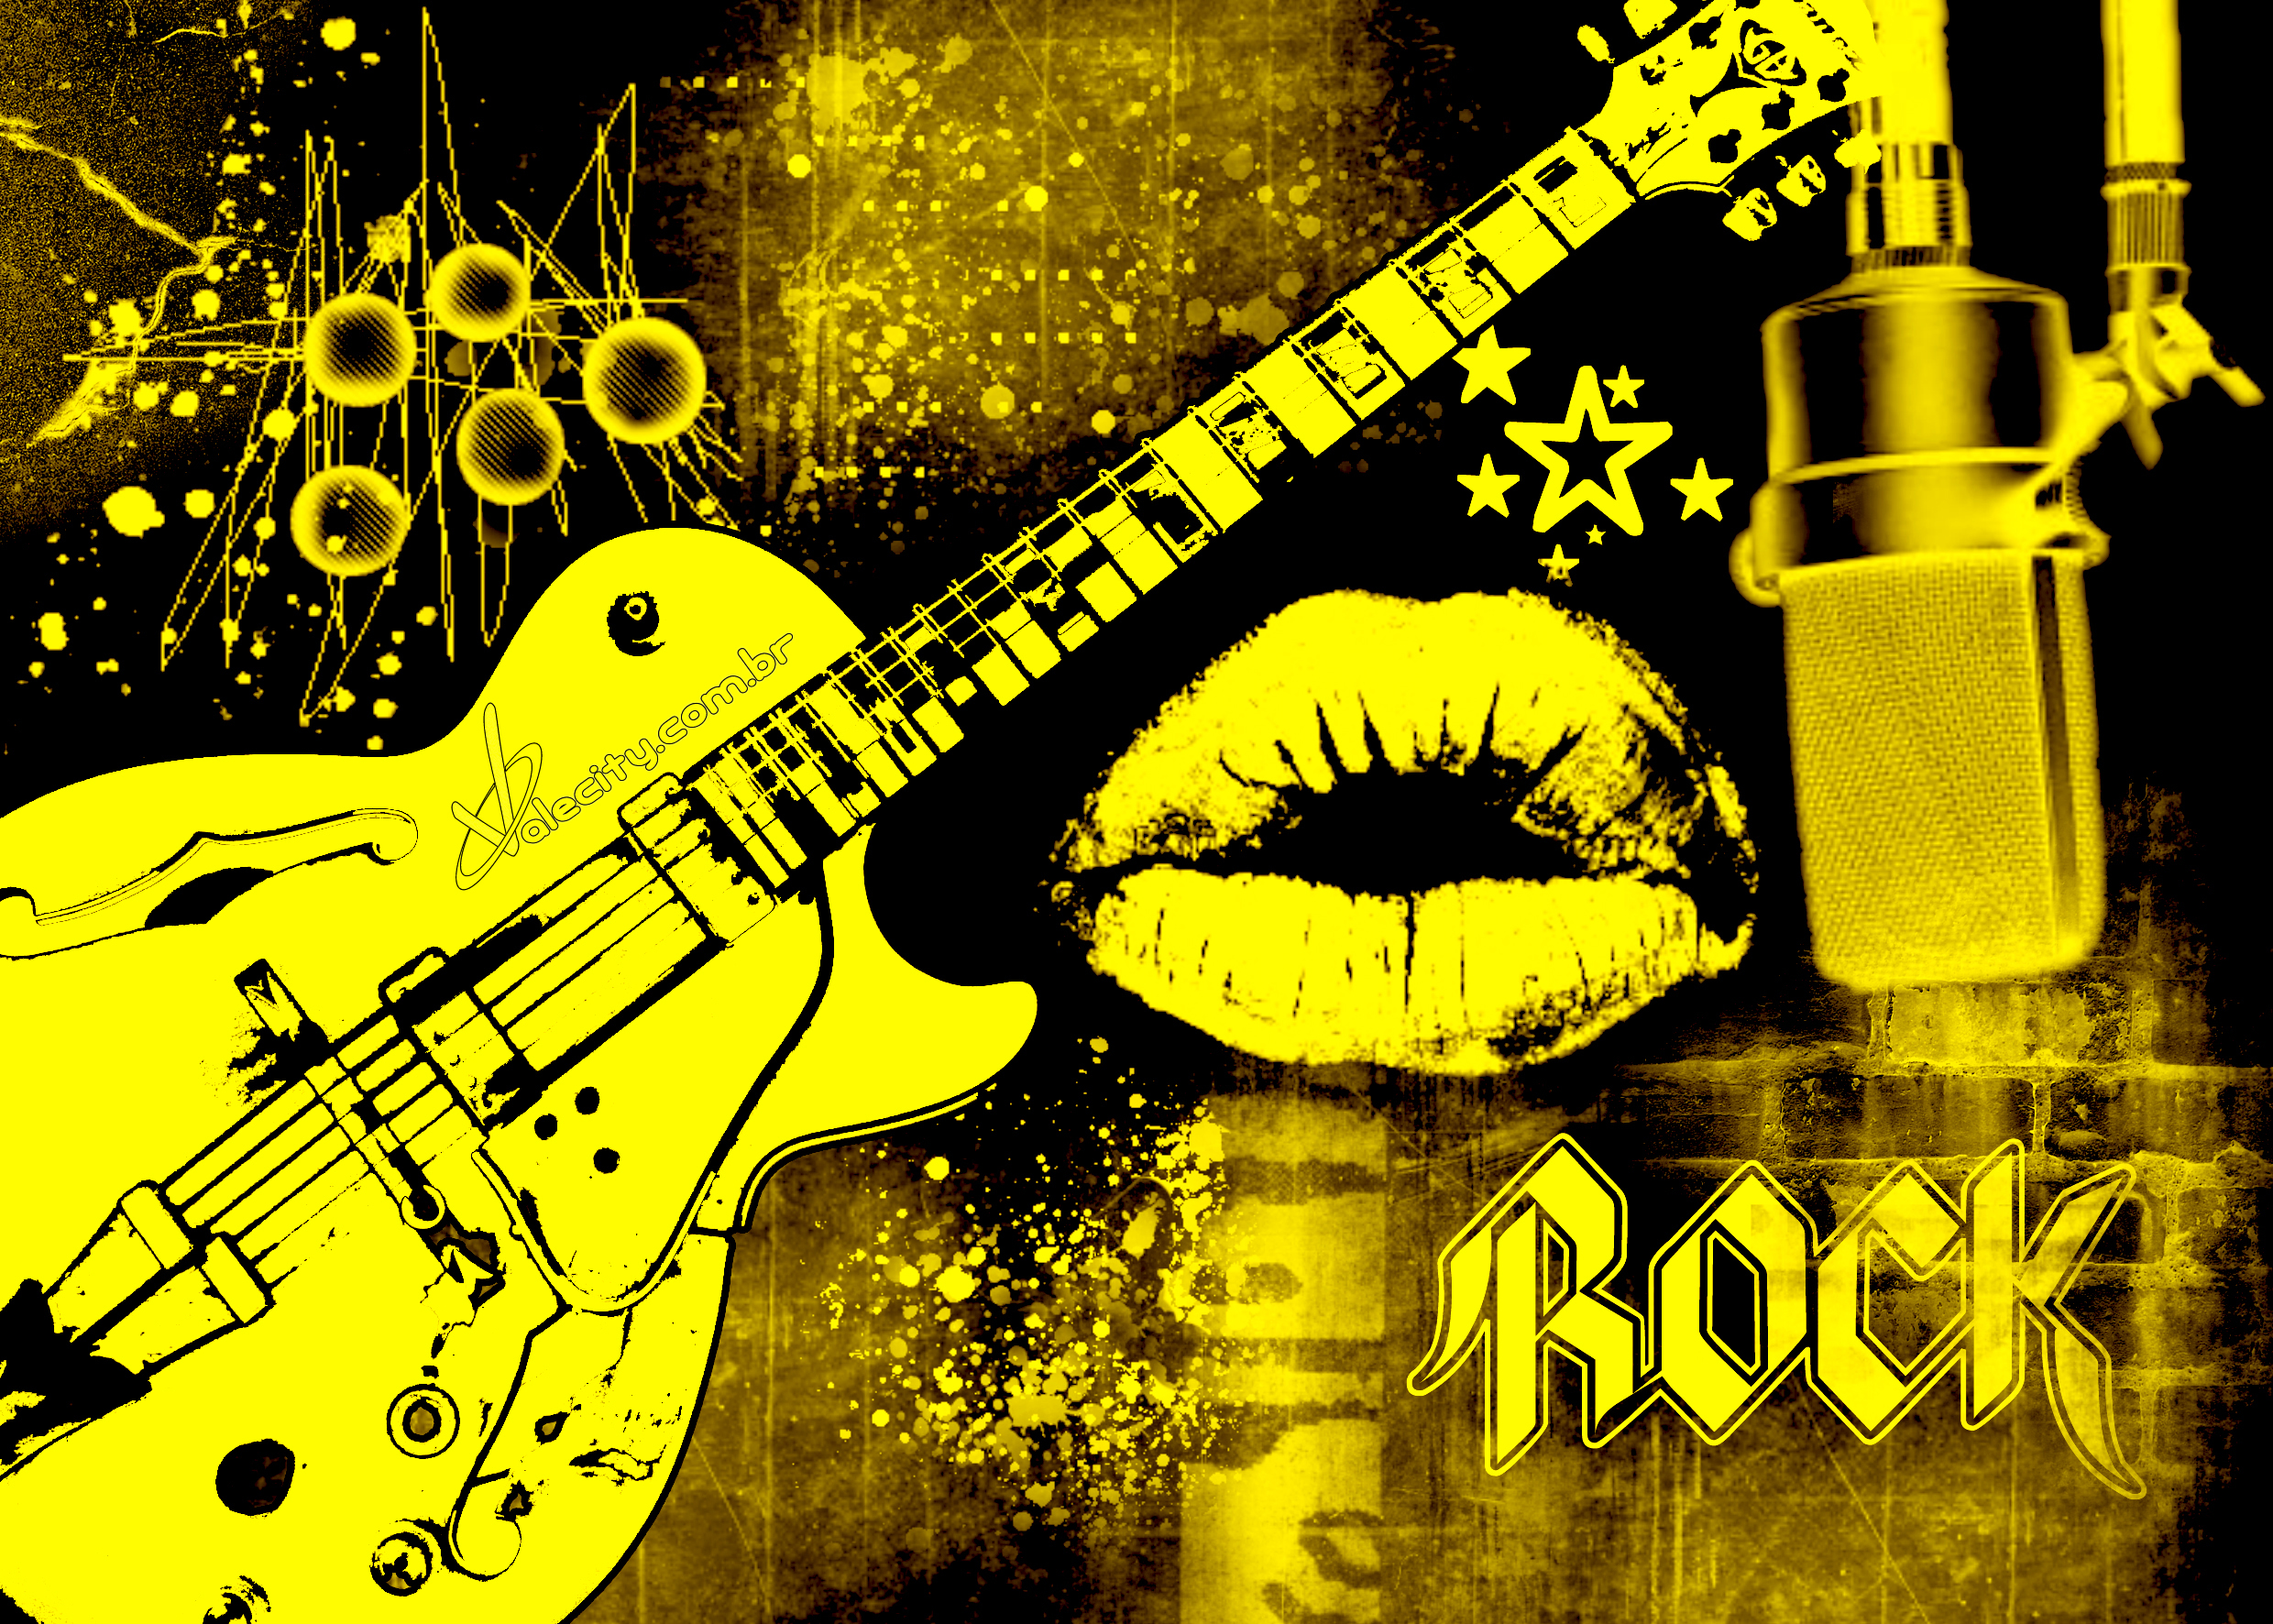 Rock - - Pix - Photos V - 3 - 9 Jpeg - Rock Music Wallpapers Hd 1080p , HD Wallpaper & Backgrounds